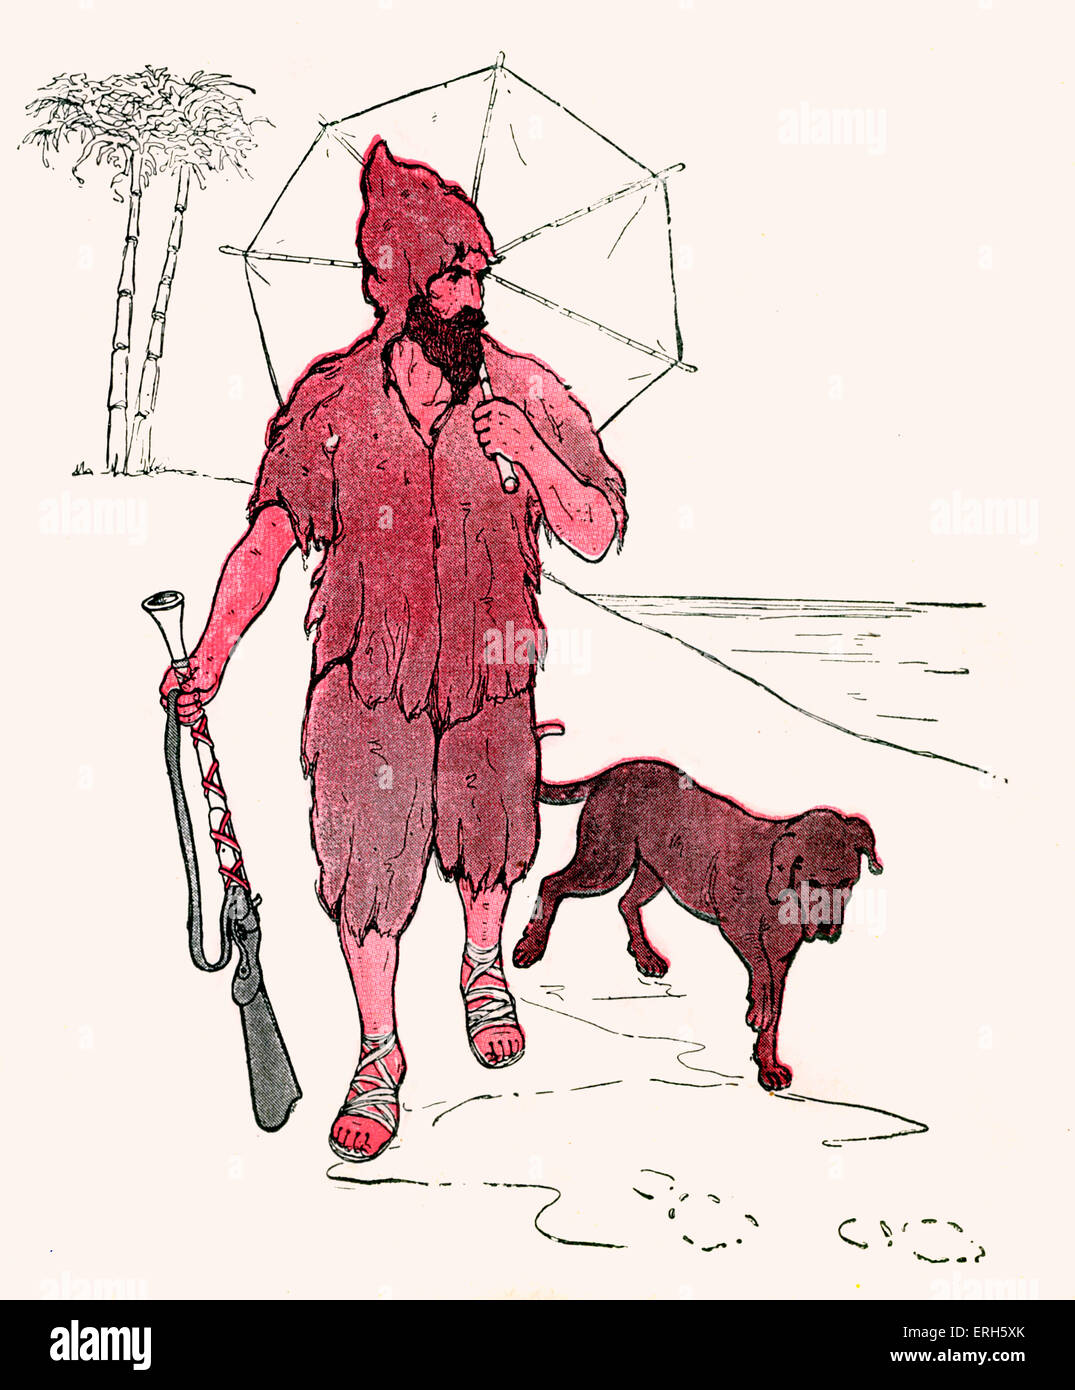 Armen alten Robinson Crusoe!, Illustration von Blanche Fisher Wright (Datum unbekannt), 1916 veröffentlicht.  "Arme alte Robinson Crusoe! Stockfoto